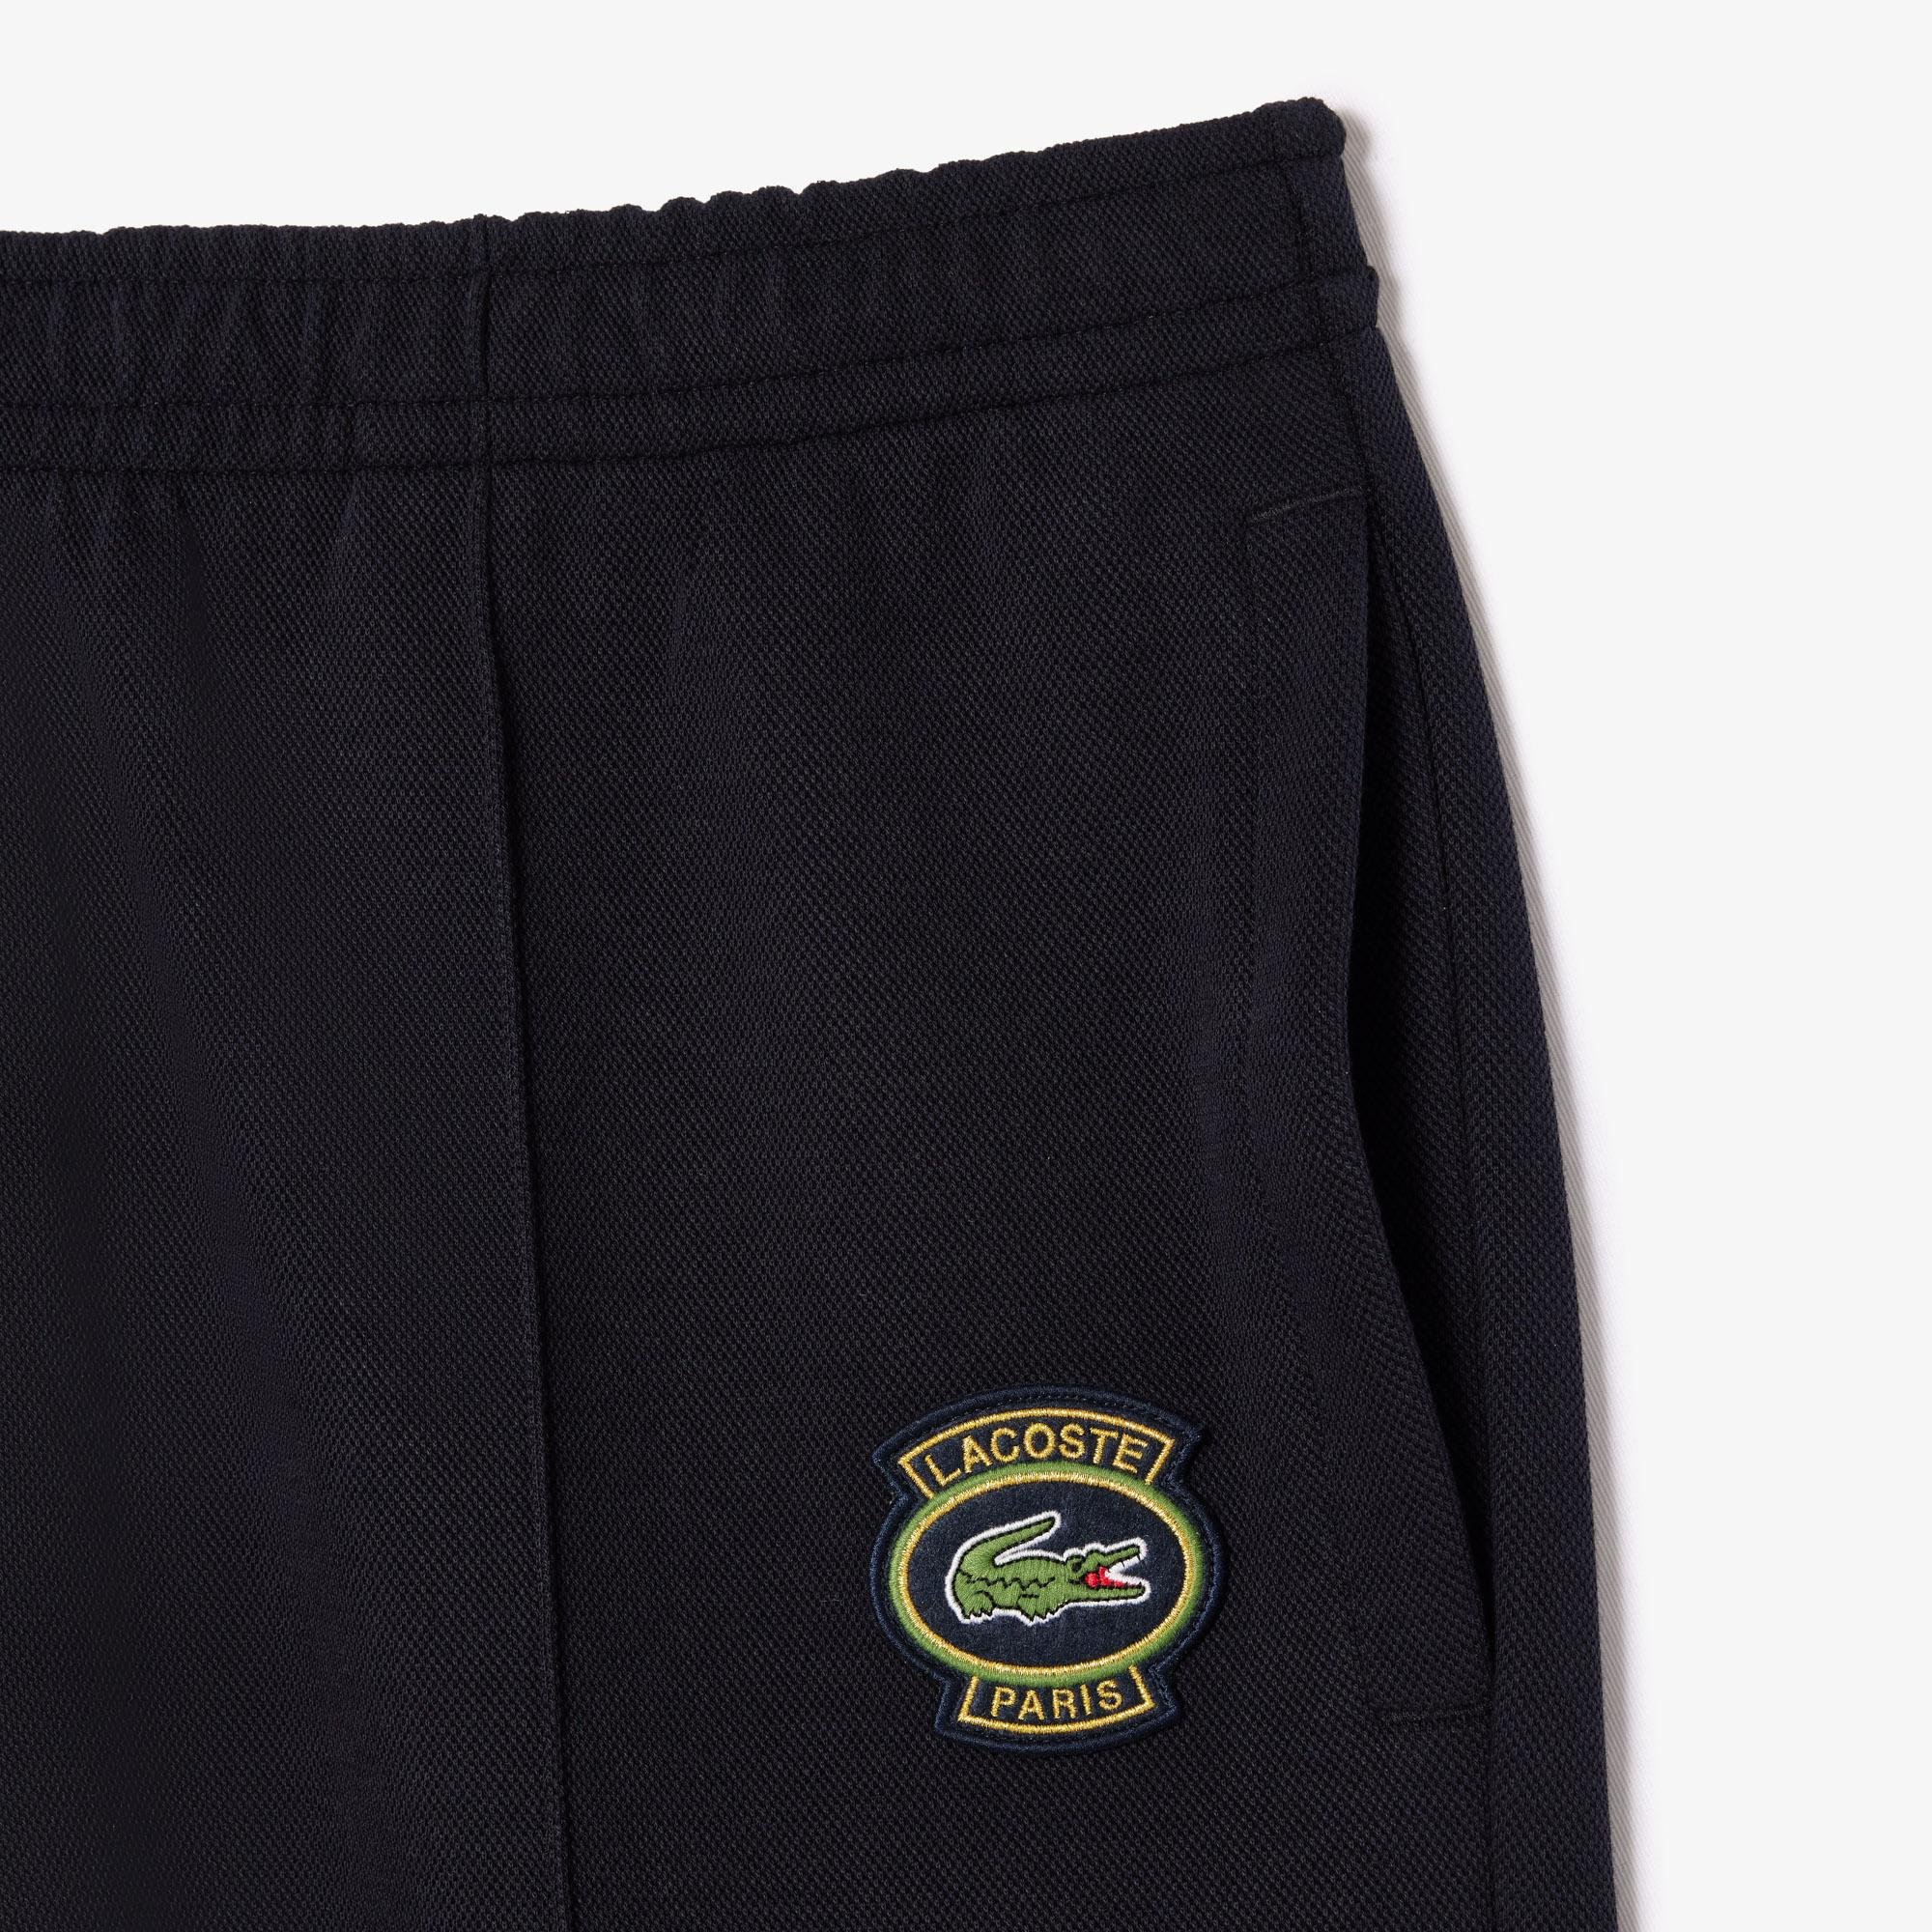 Lacoste oboustranné jogger teplákové kalhoty s piké